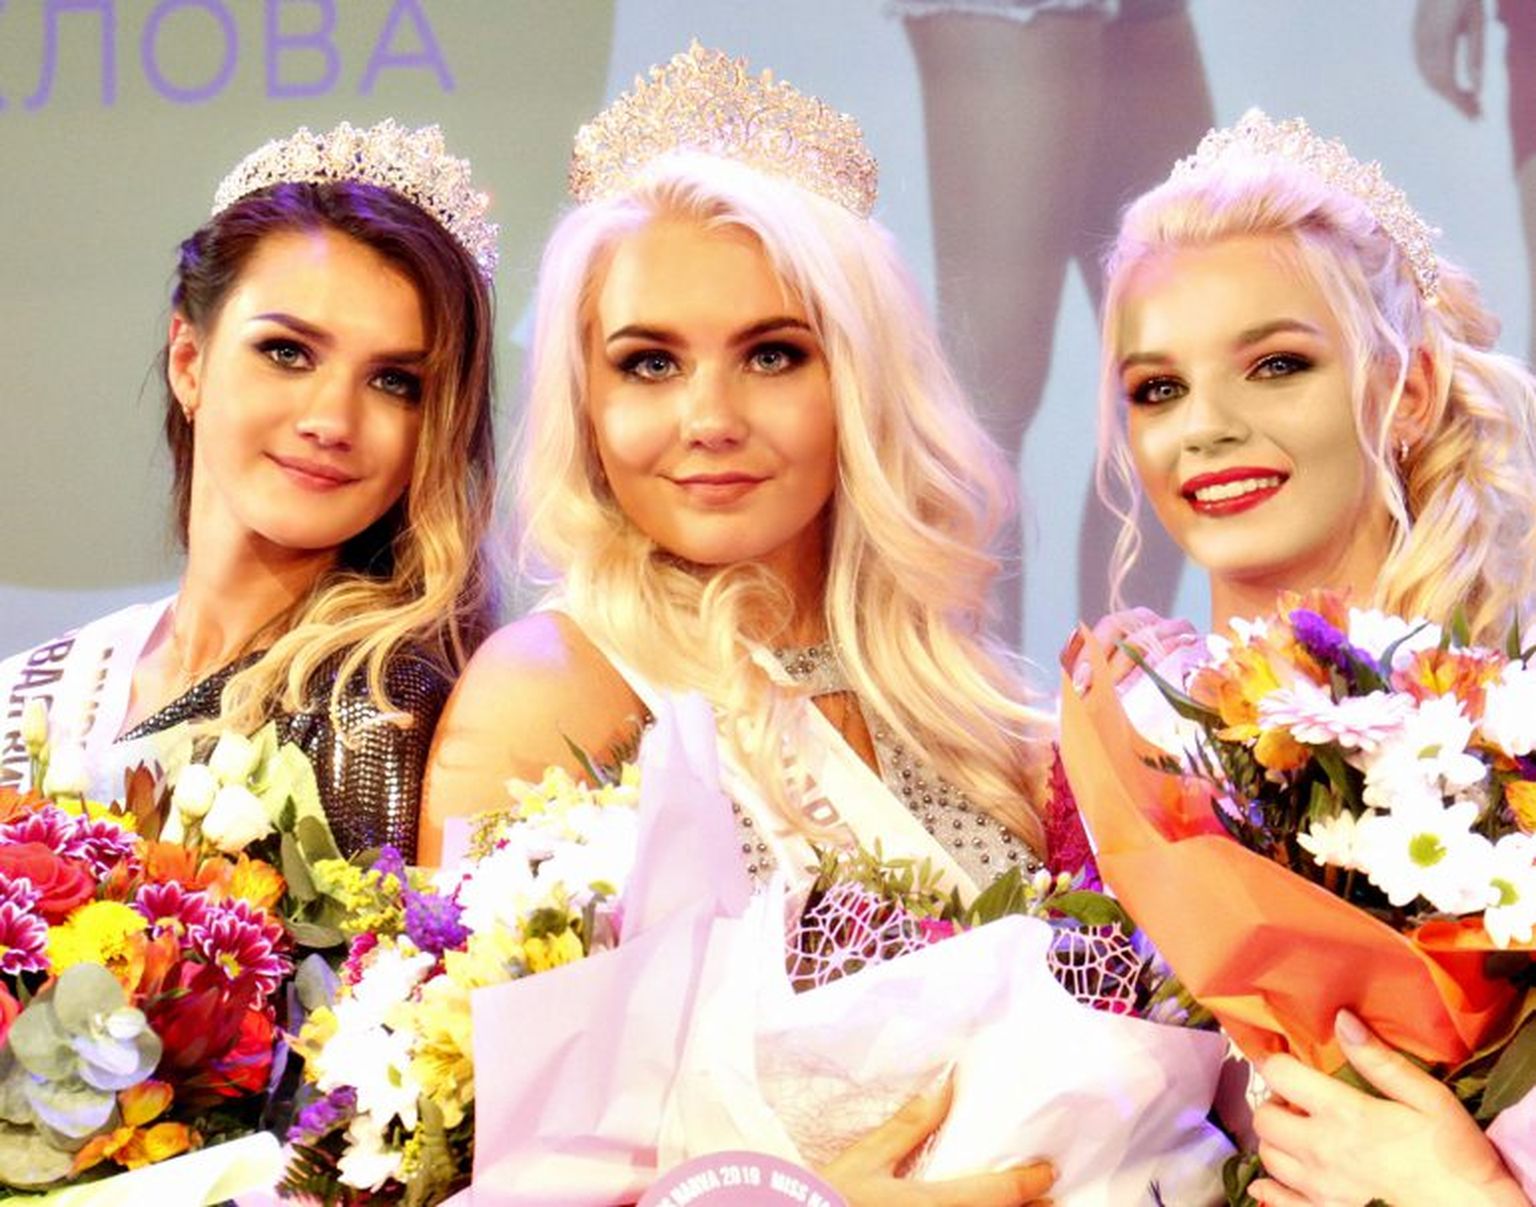 Победительницы конкурса «Мисс Нарва-2019»: победительницы Анастасия Хохлова, «Мисс зрительских симпатий» Анна Щедренкова
(она же – первая вице-мисс), второй вице-мисс стала Надежда Гулова.